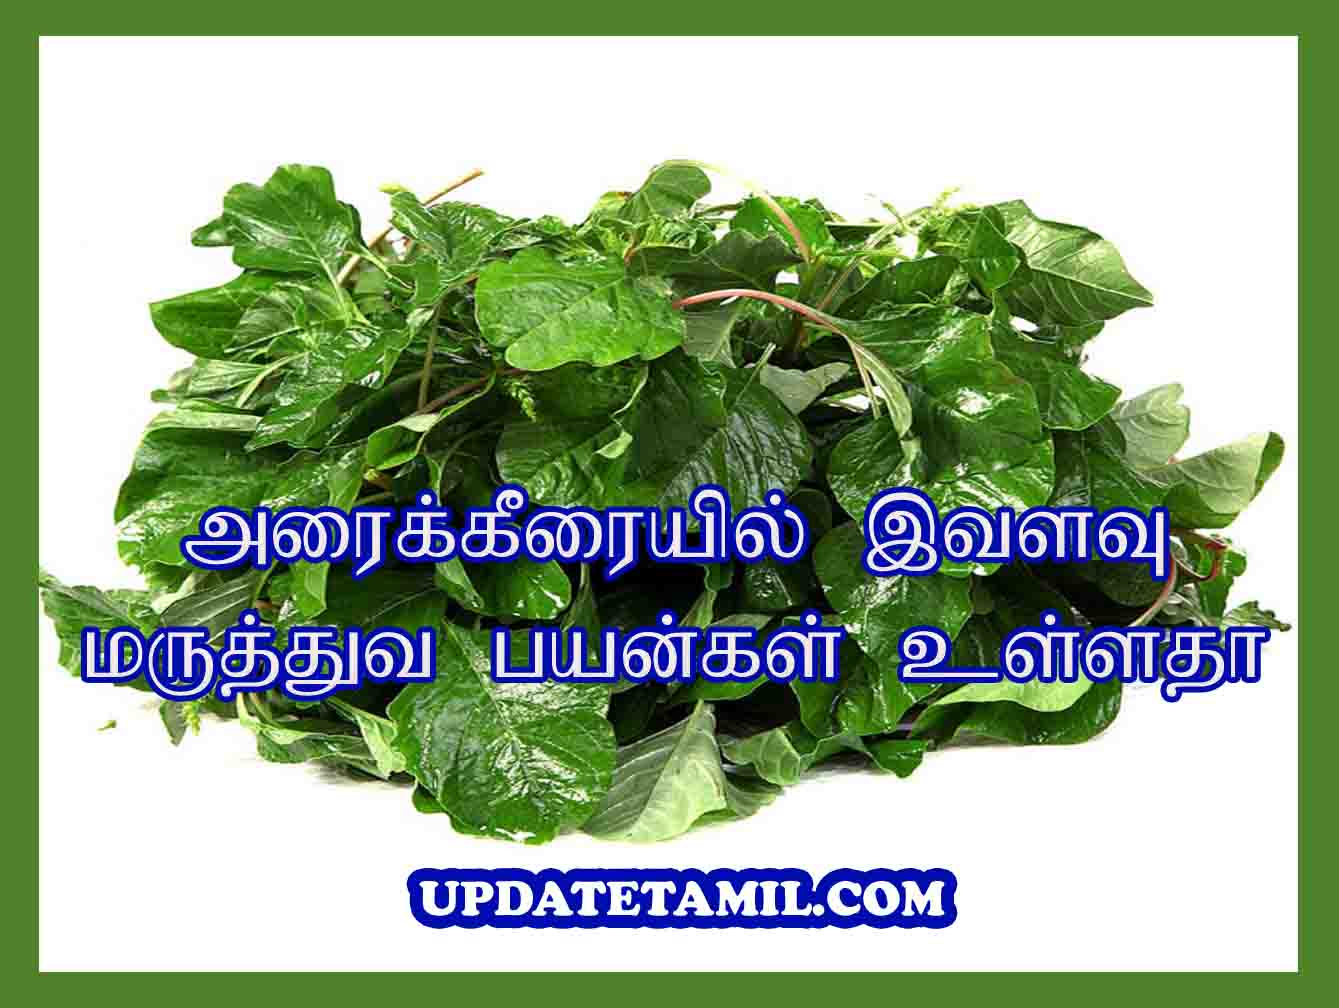 அரைக்கீரை பயன்கள் Arai Keerai Benefits in Tamil